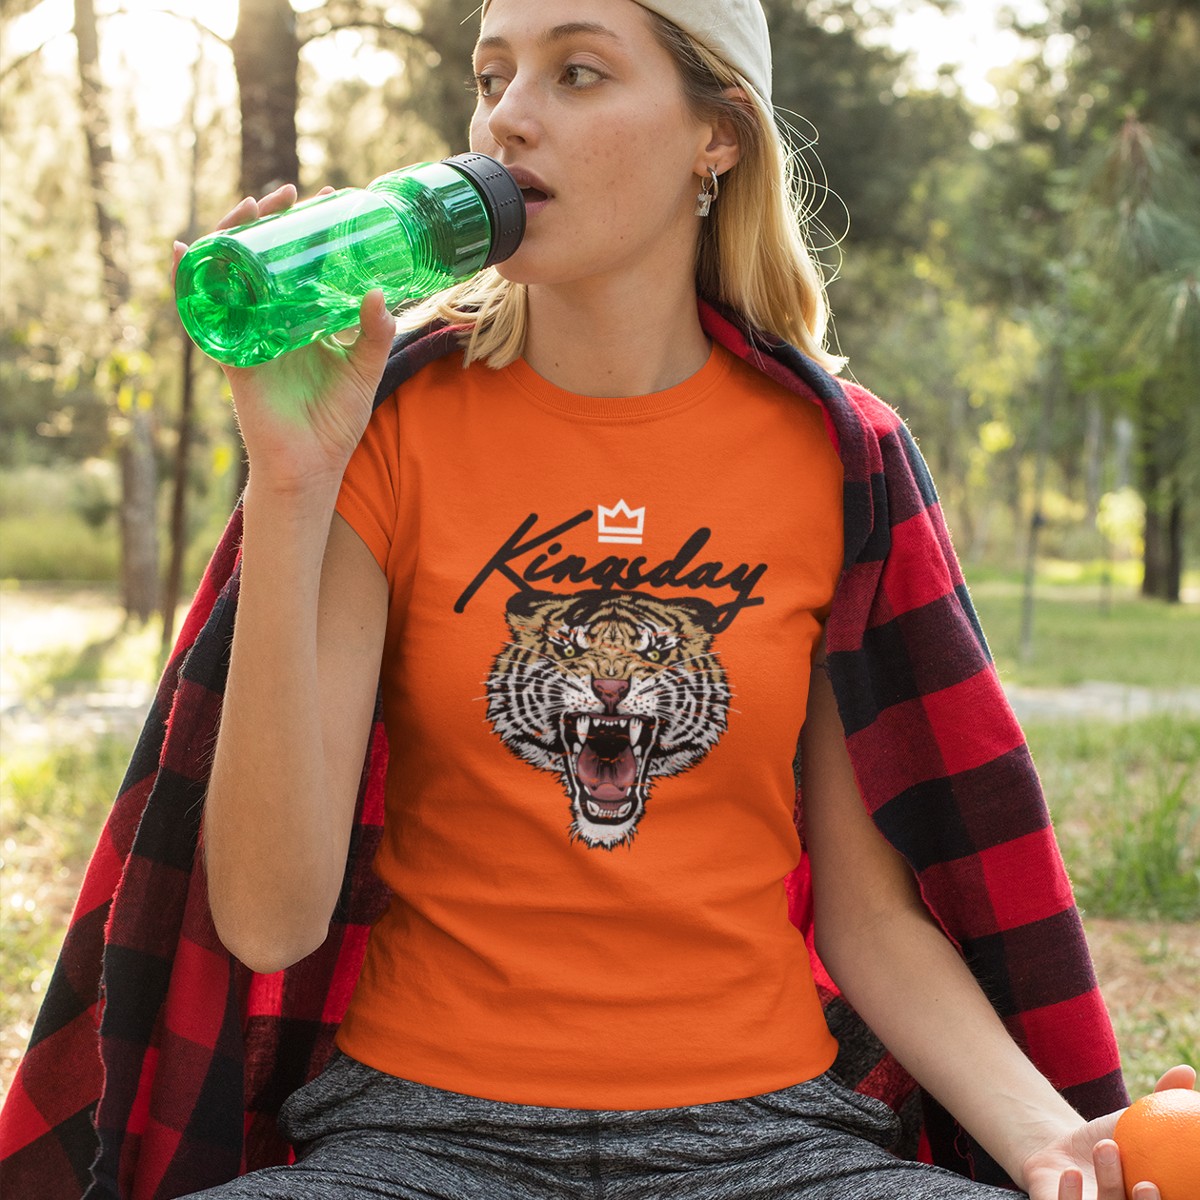 sector planter Alsjeblieft kijk Oranje Koningsdag T-shirt - Kingsday Tiger Crown | Snelle verzending